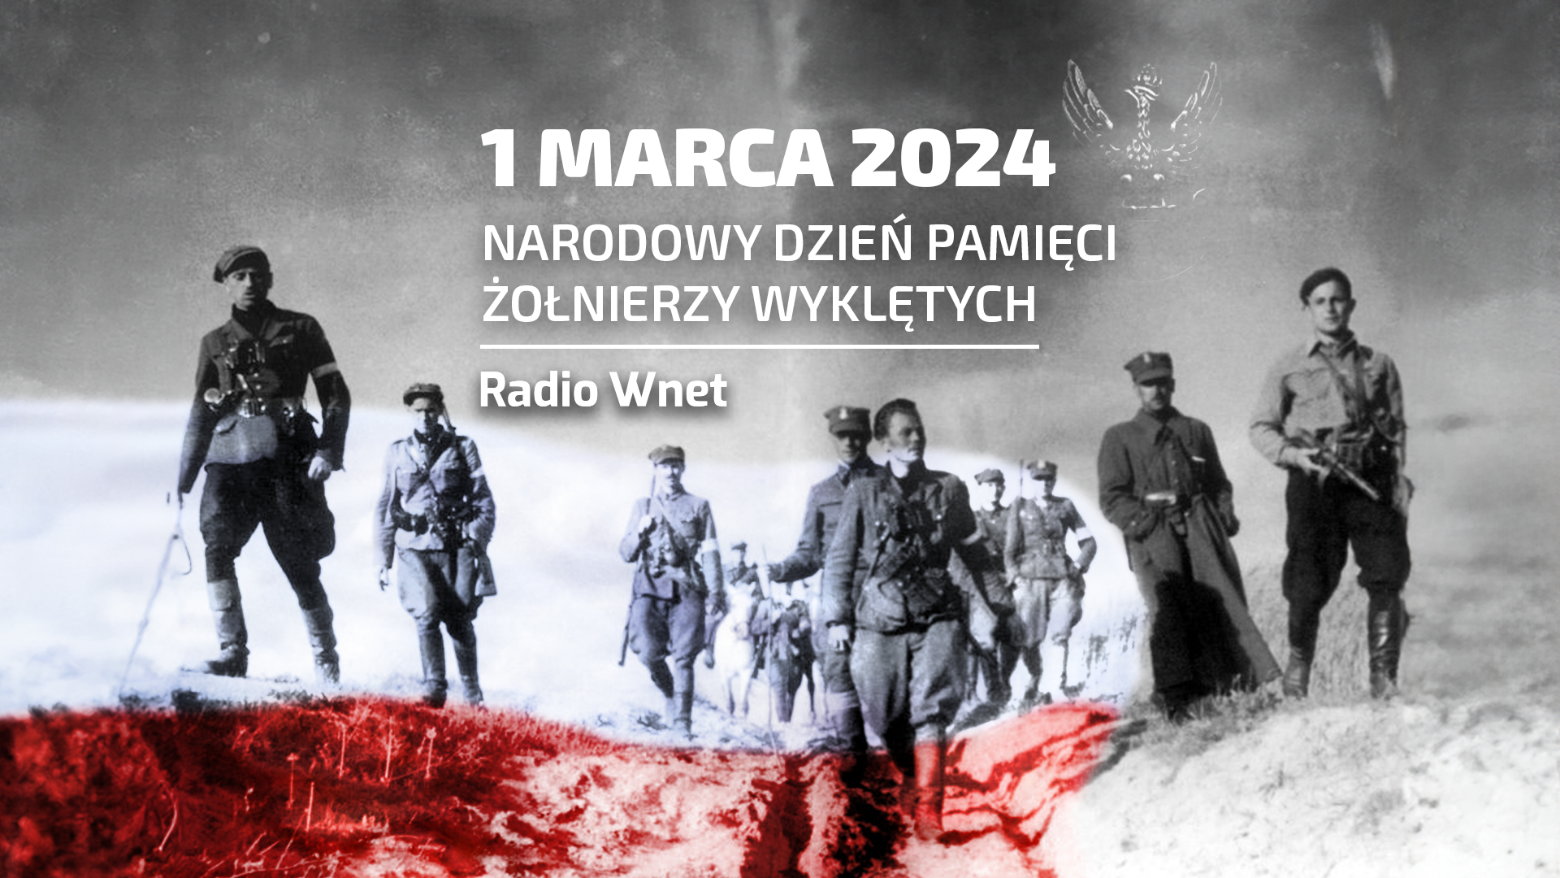 Audycji można słuchać na 87.8 FM w Warszawie, 95.2 FM w Krakowie, 96.8 FM we Wrocławiu, 103.9 FM w Białymstoku, 98.9 FM w Szczecinie, 106.1 FM w Łodzi, 104.4 FM w Bydgoszczy, 101.1 FM w Lublinie.